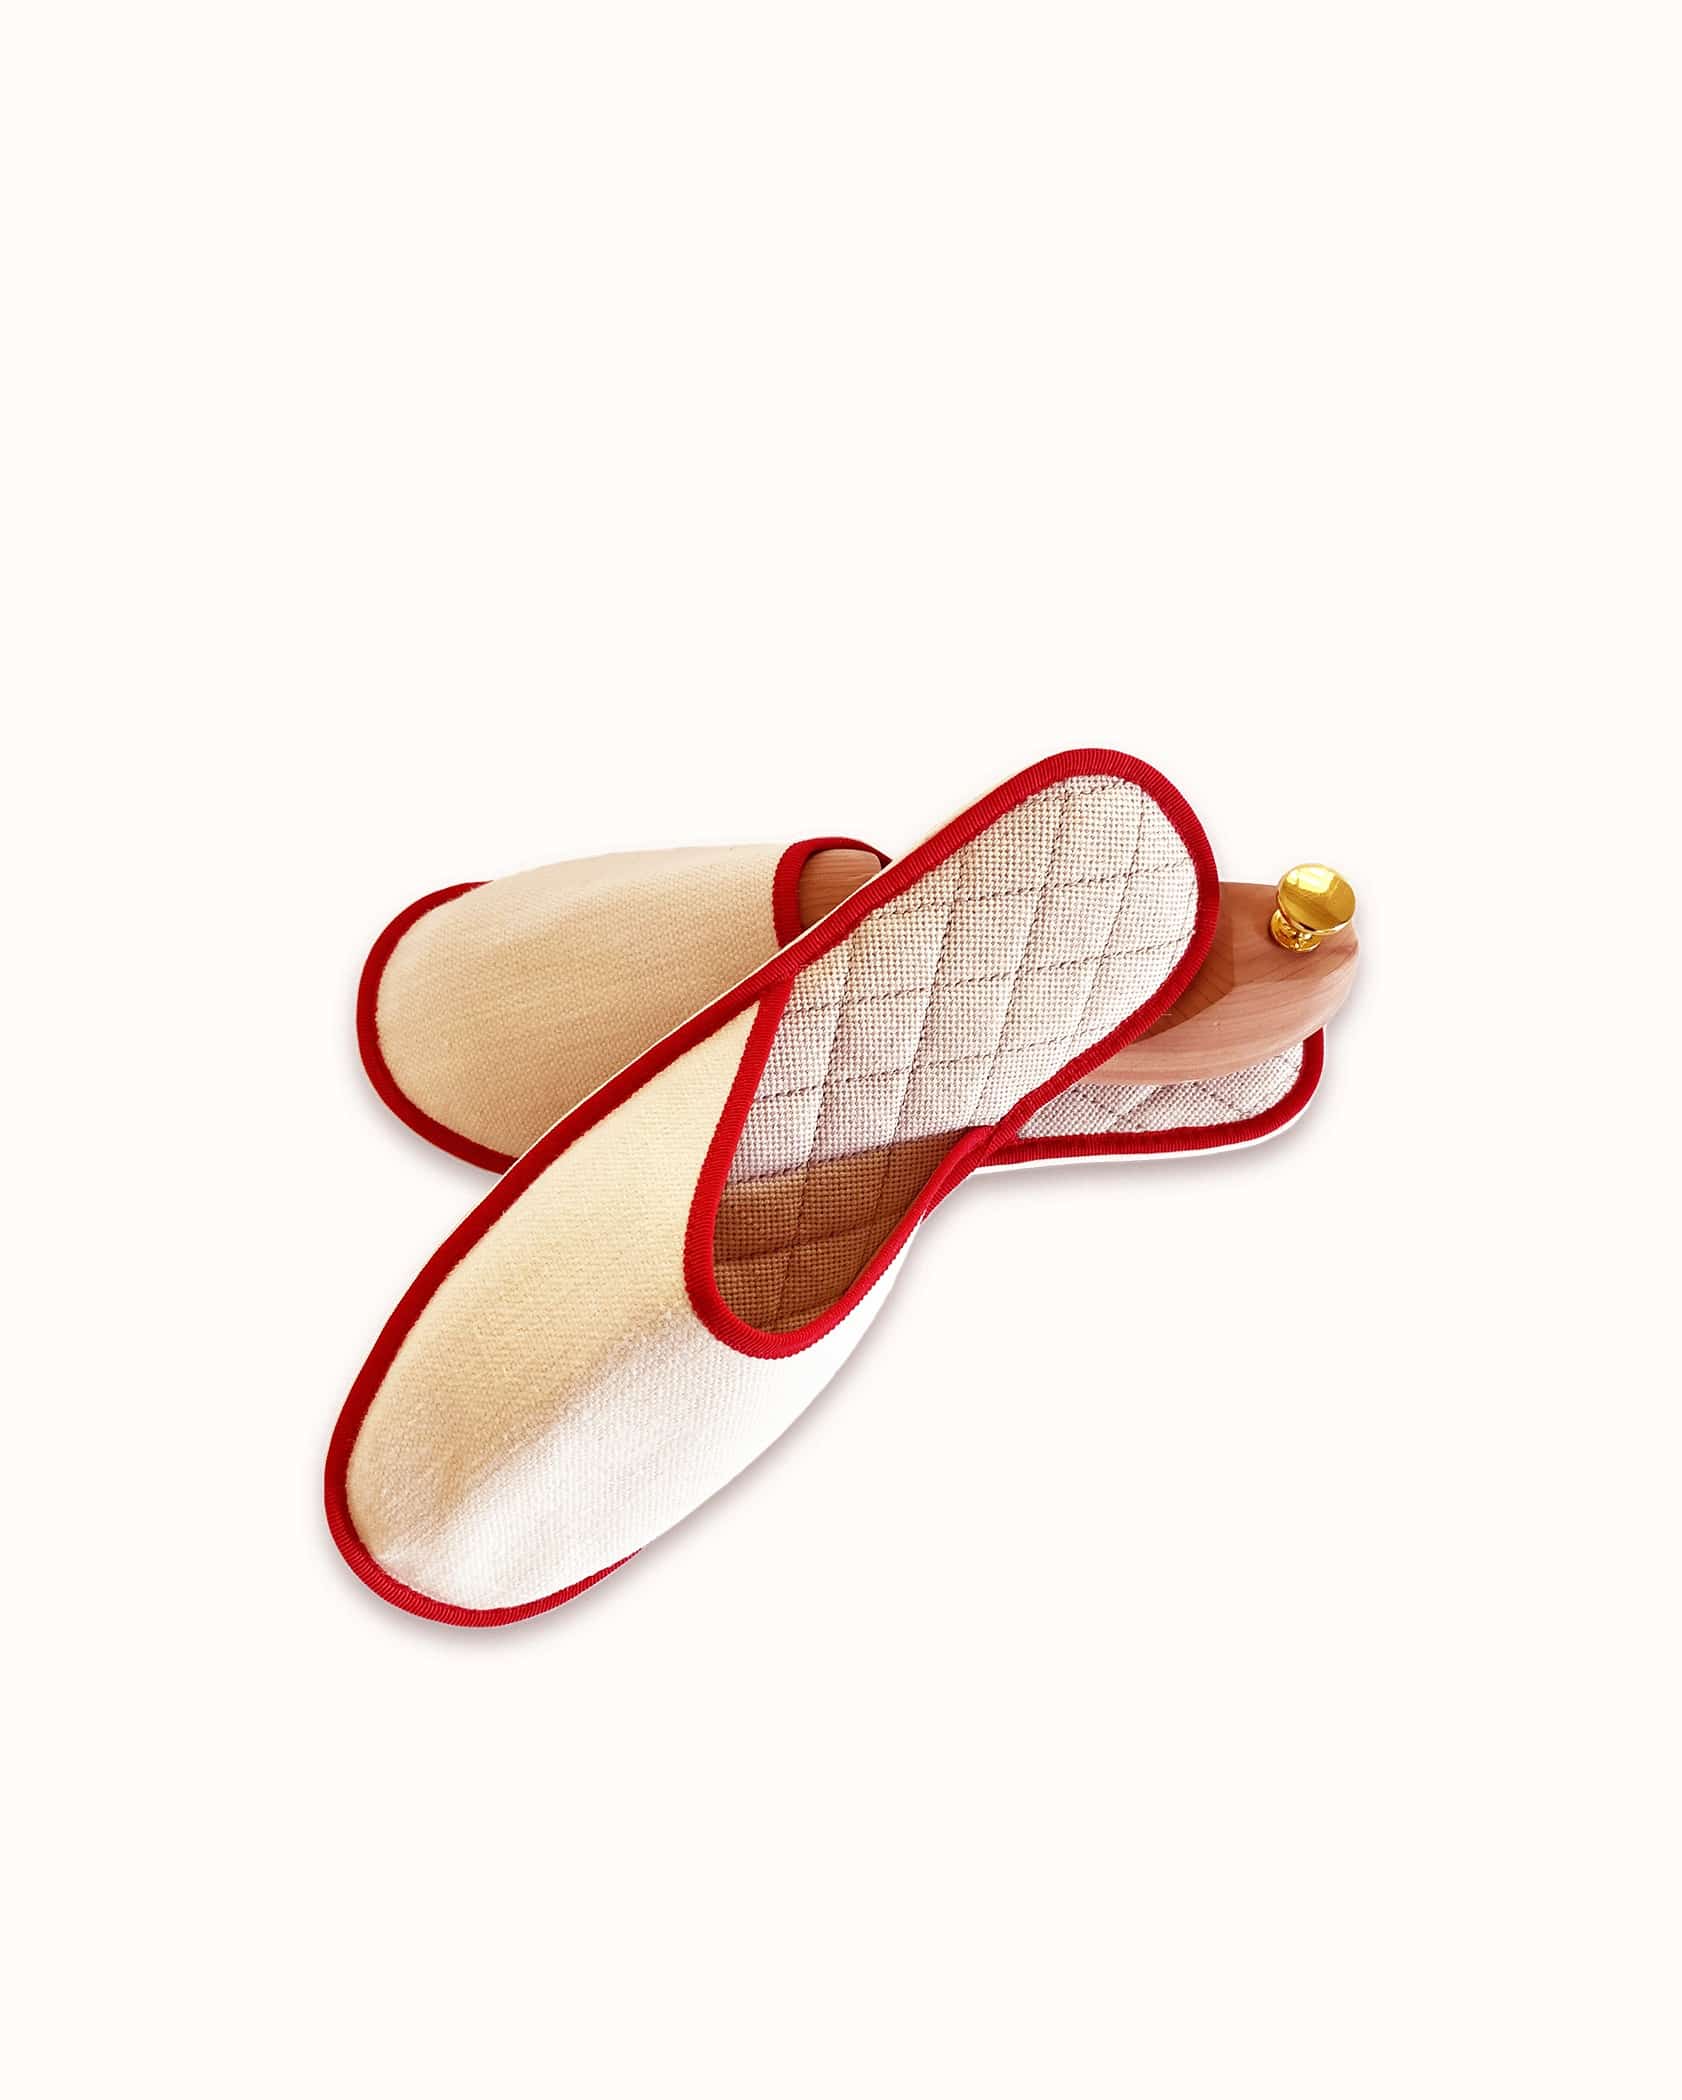 Chausson français pour homme, femme et enfant fabriqué en France. Modèle Voiello (beige et rouge), une pantoufle comme à l’hôtel vêtue d’un rembourrage matelassé et d’une finition sophistiquée.